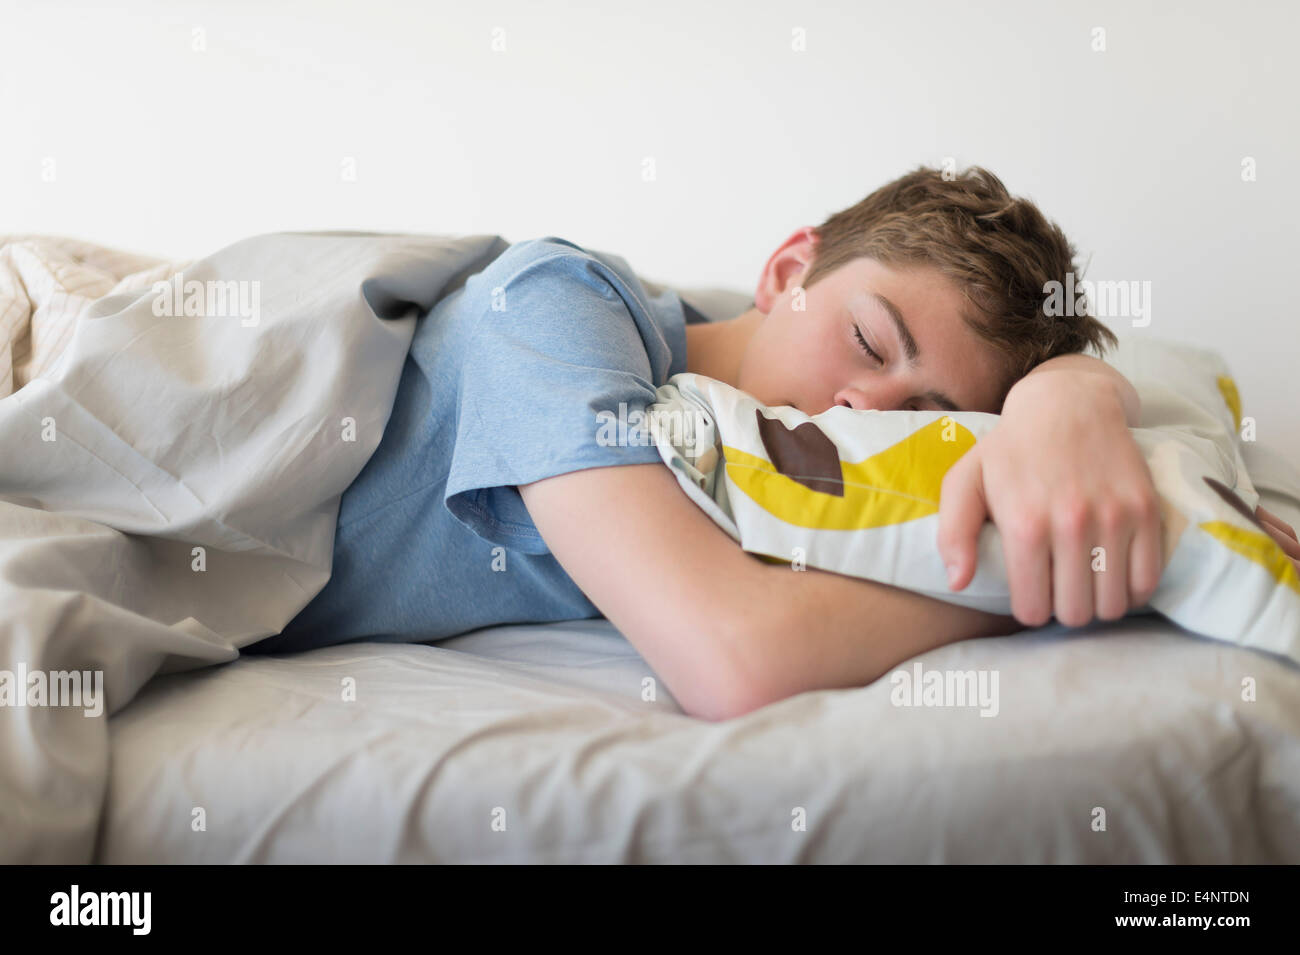 sleeping teen boy porn